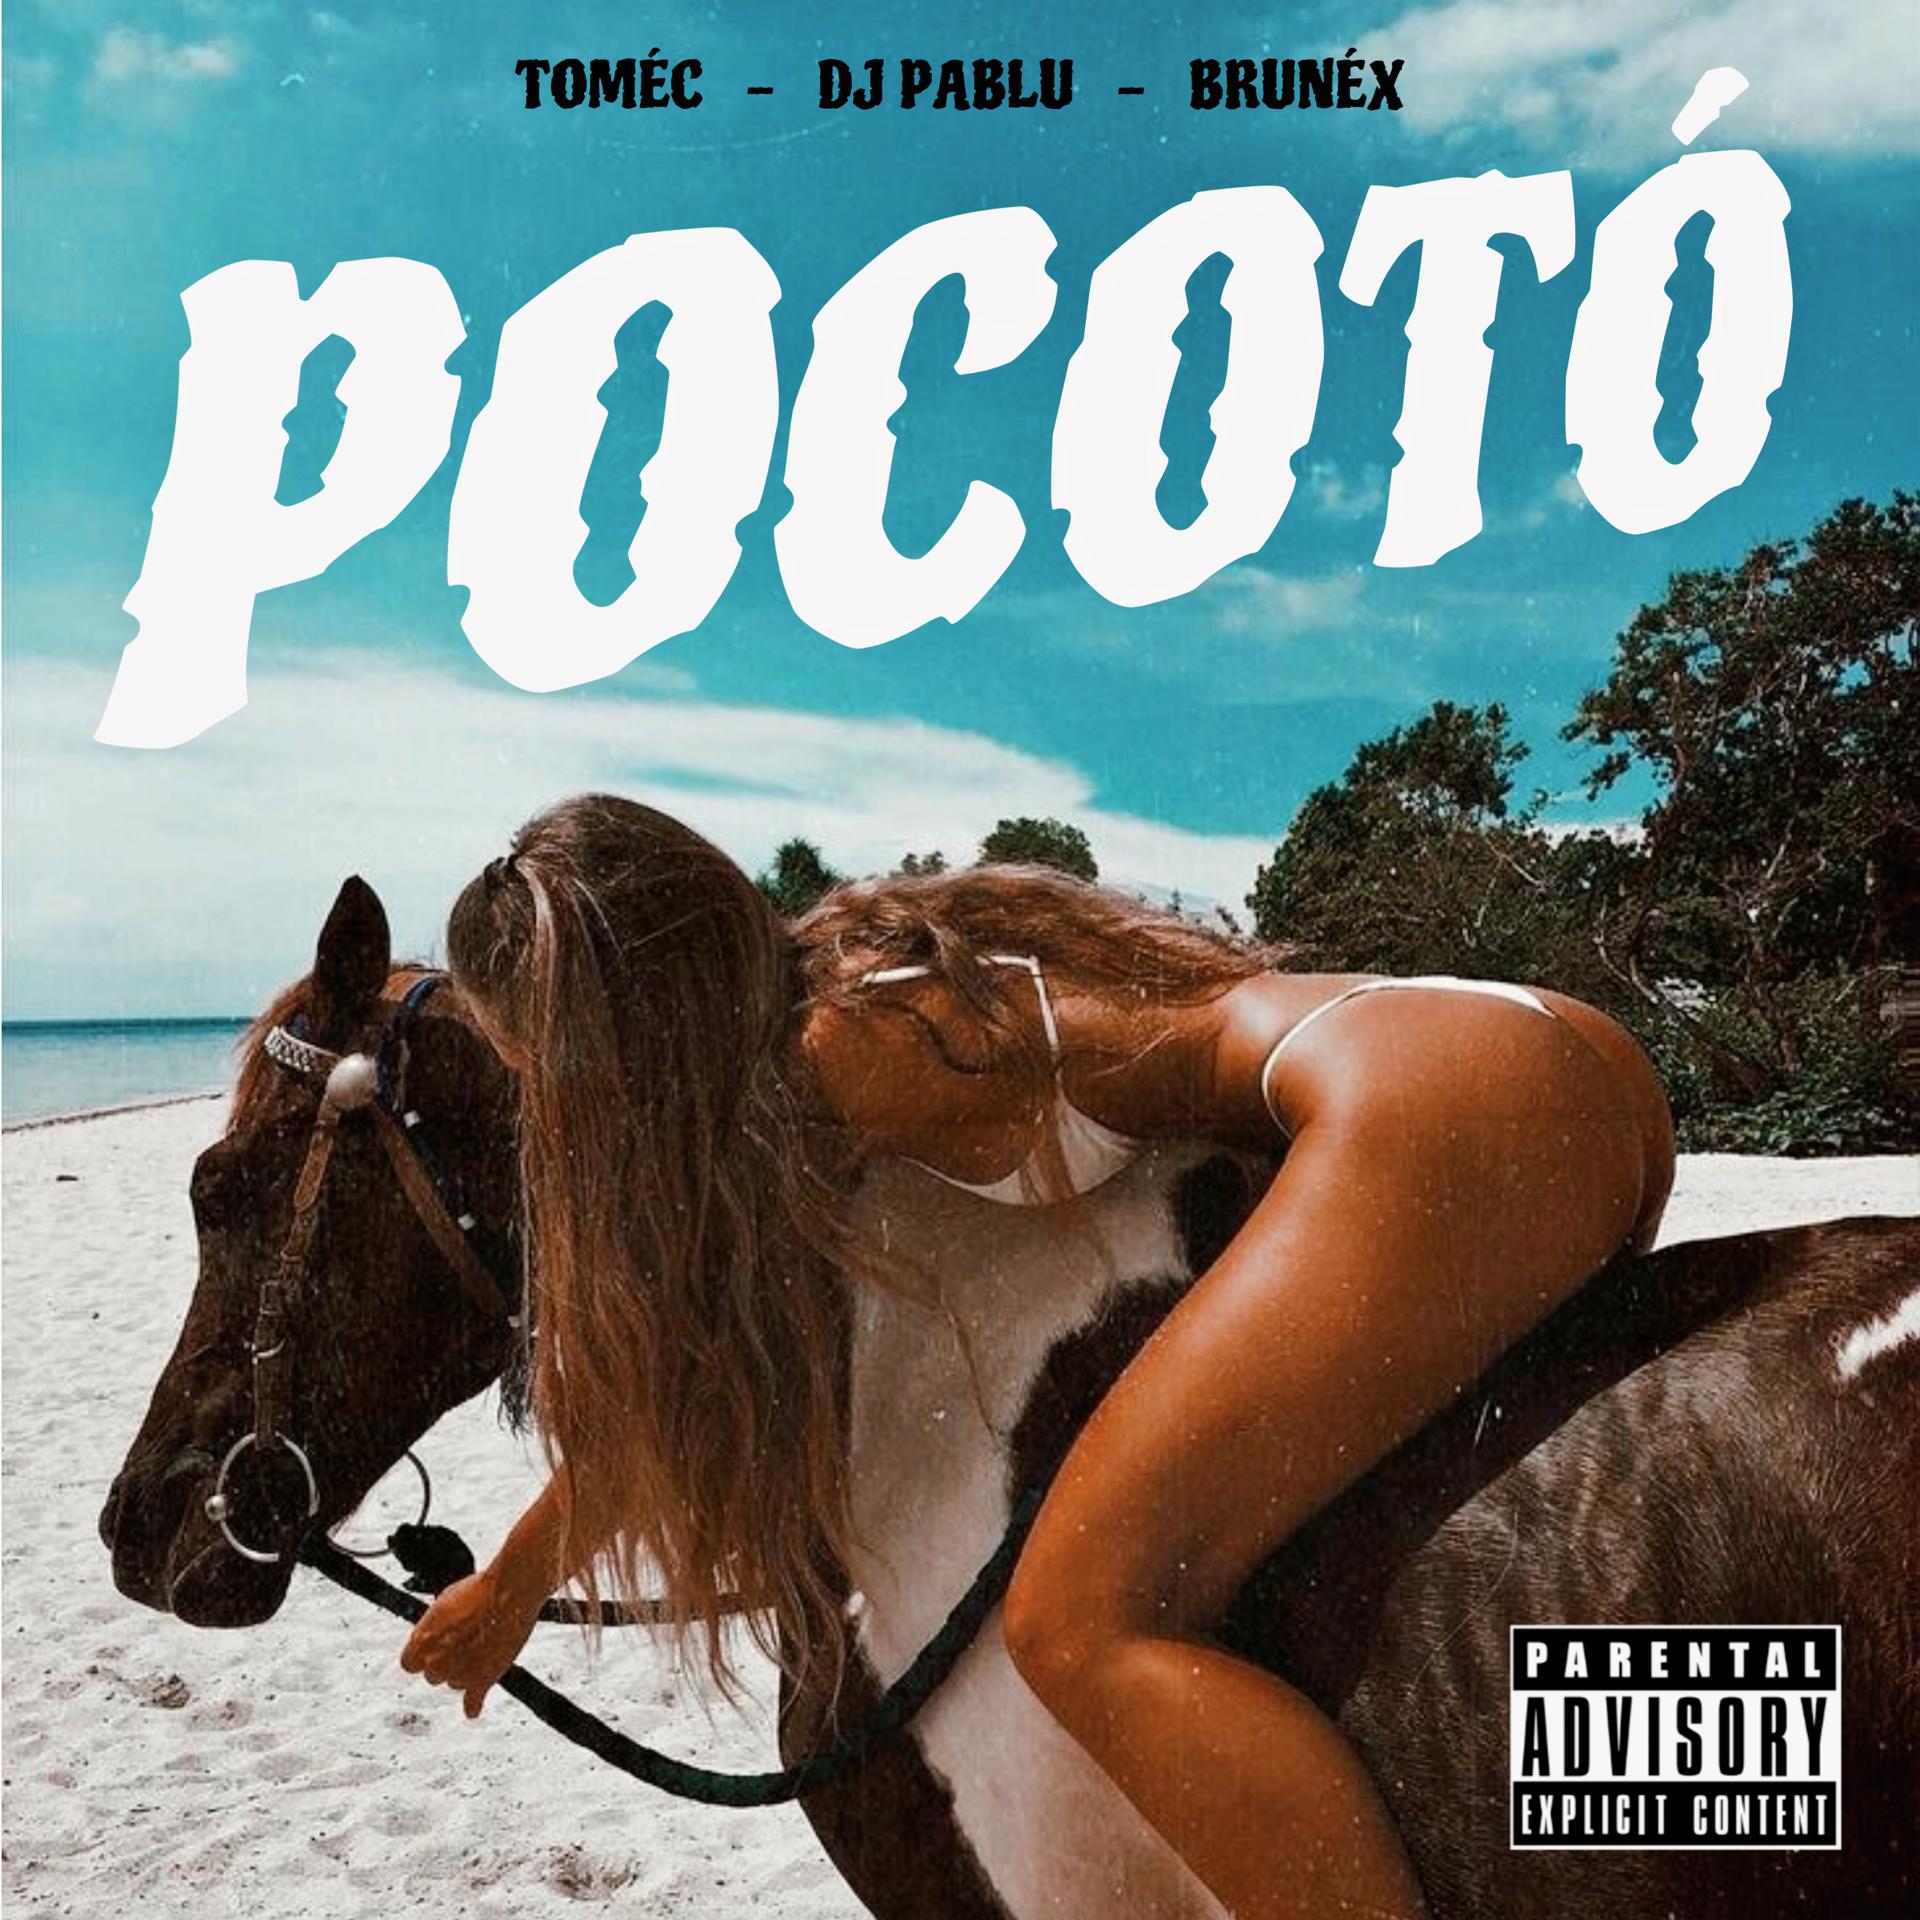 Постер альбома Pocotó